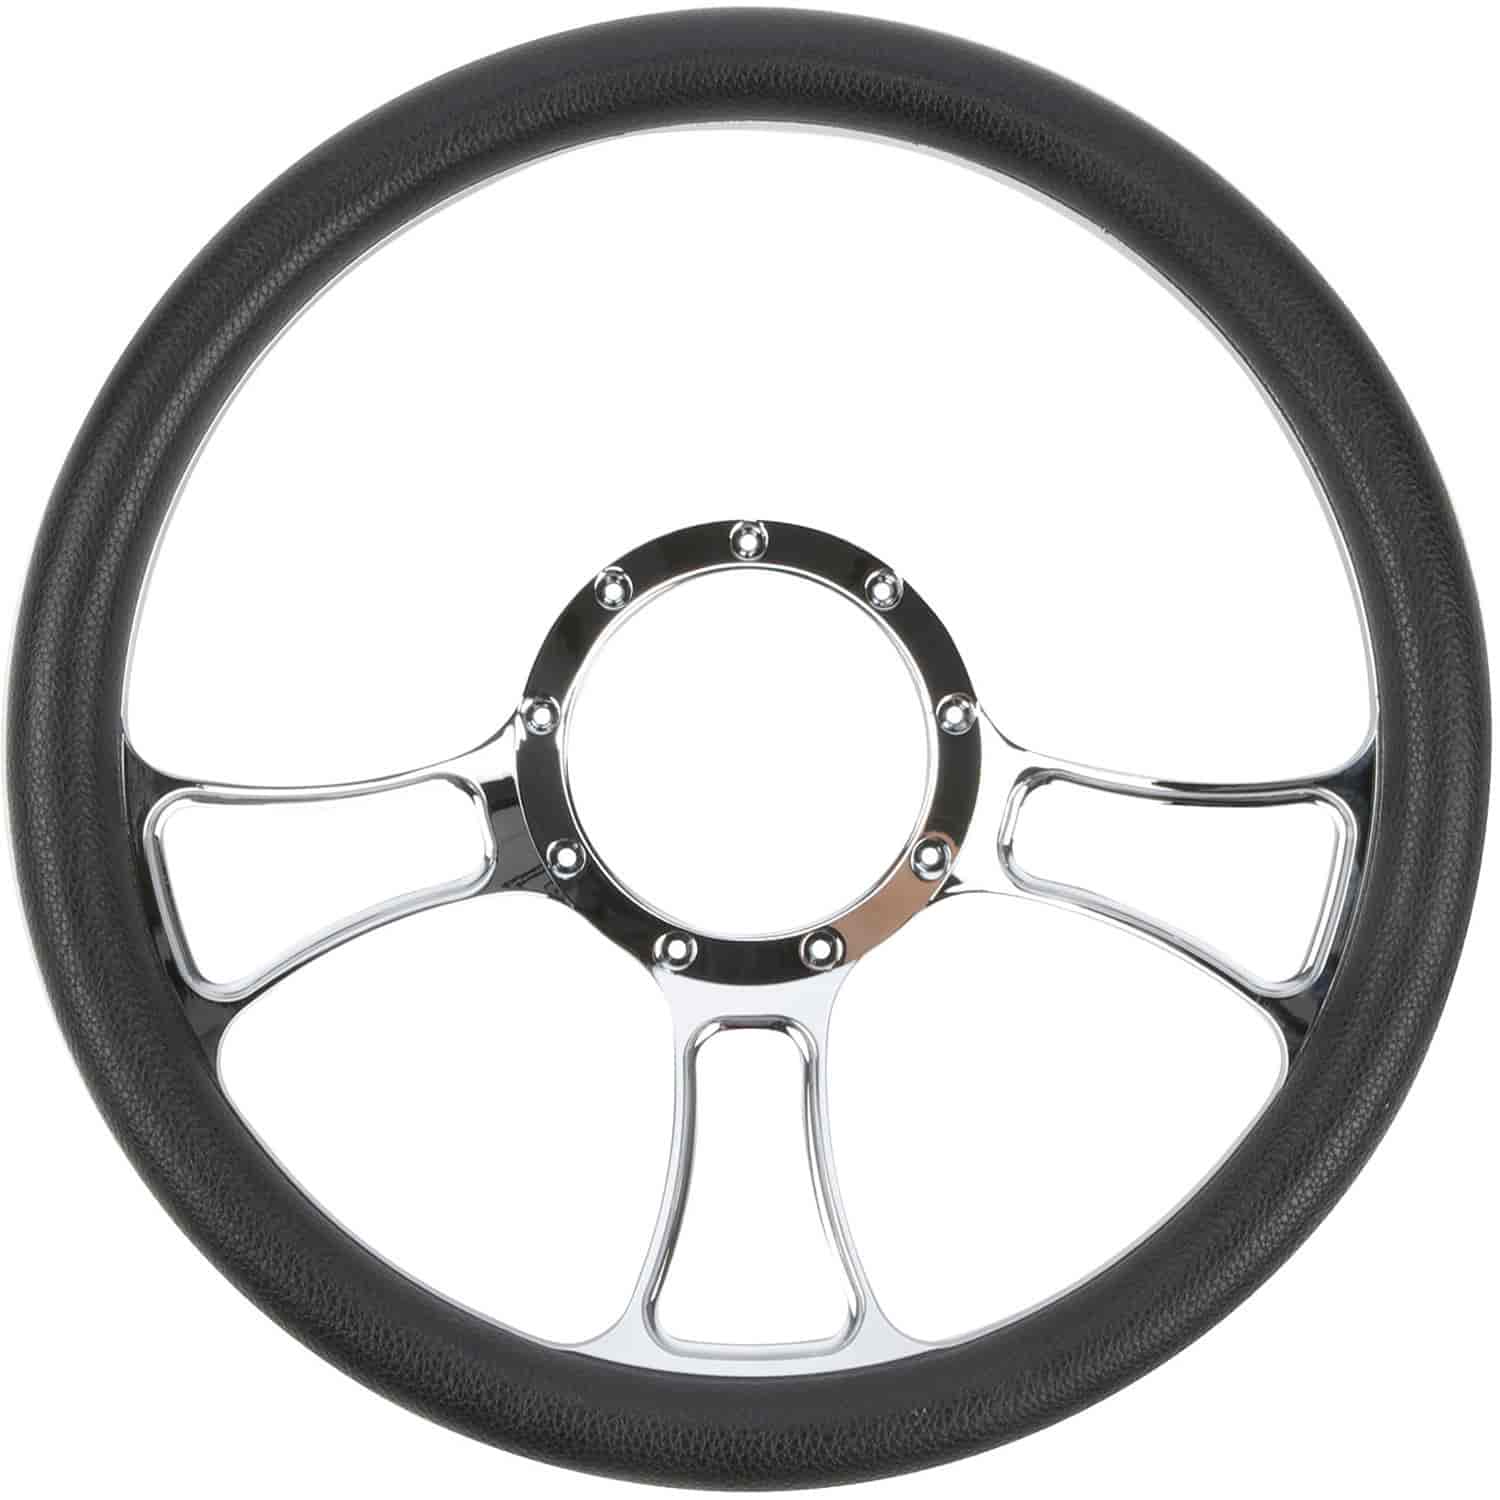 Chrome-Plated Billet Aluminum 14 in. Steering Wheel [Gothic Spoke Design]